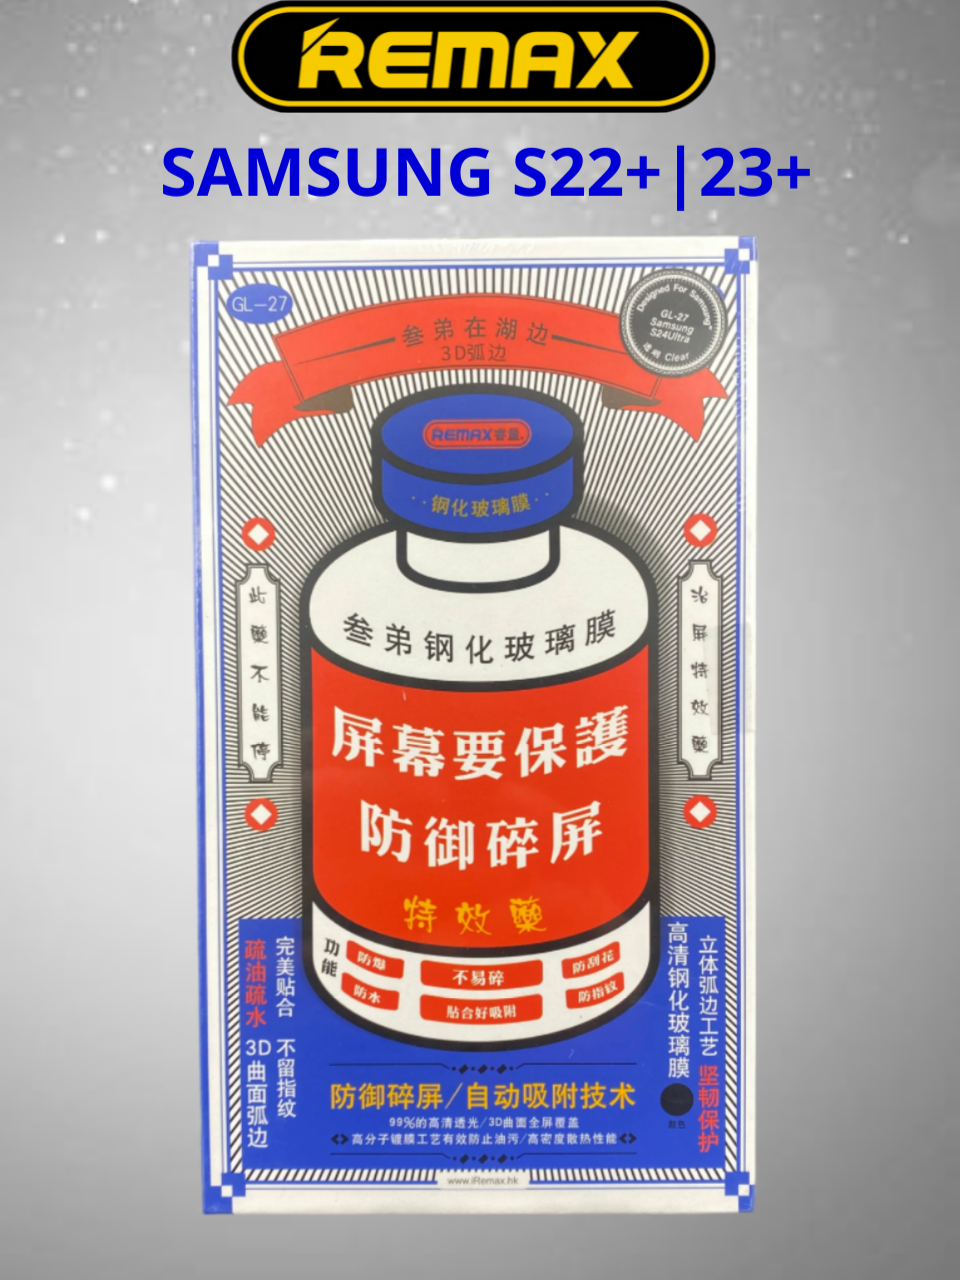 Защитное стекло для Samsung Galaxy S 22Plus | S23Plus Remax GL-27 защитное стекло на Самсунг Гэлакси С 22+| C23+ плюс